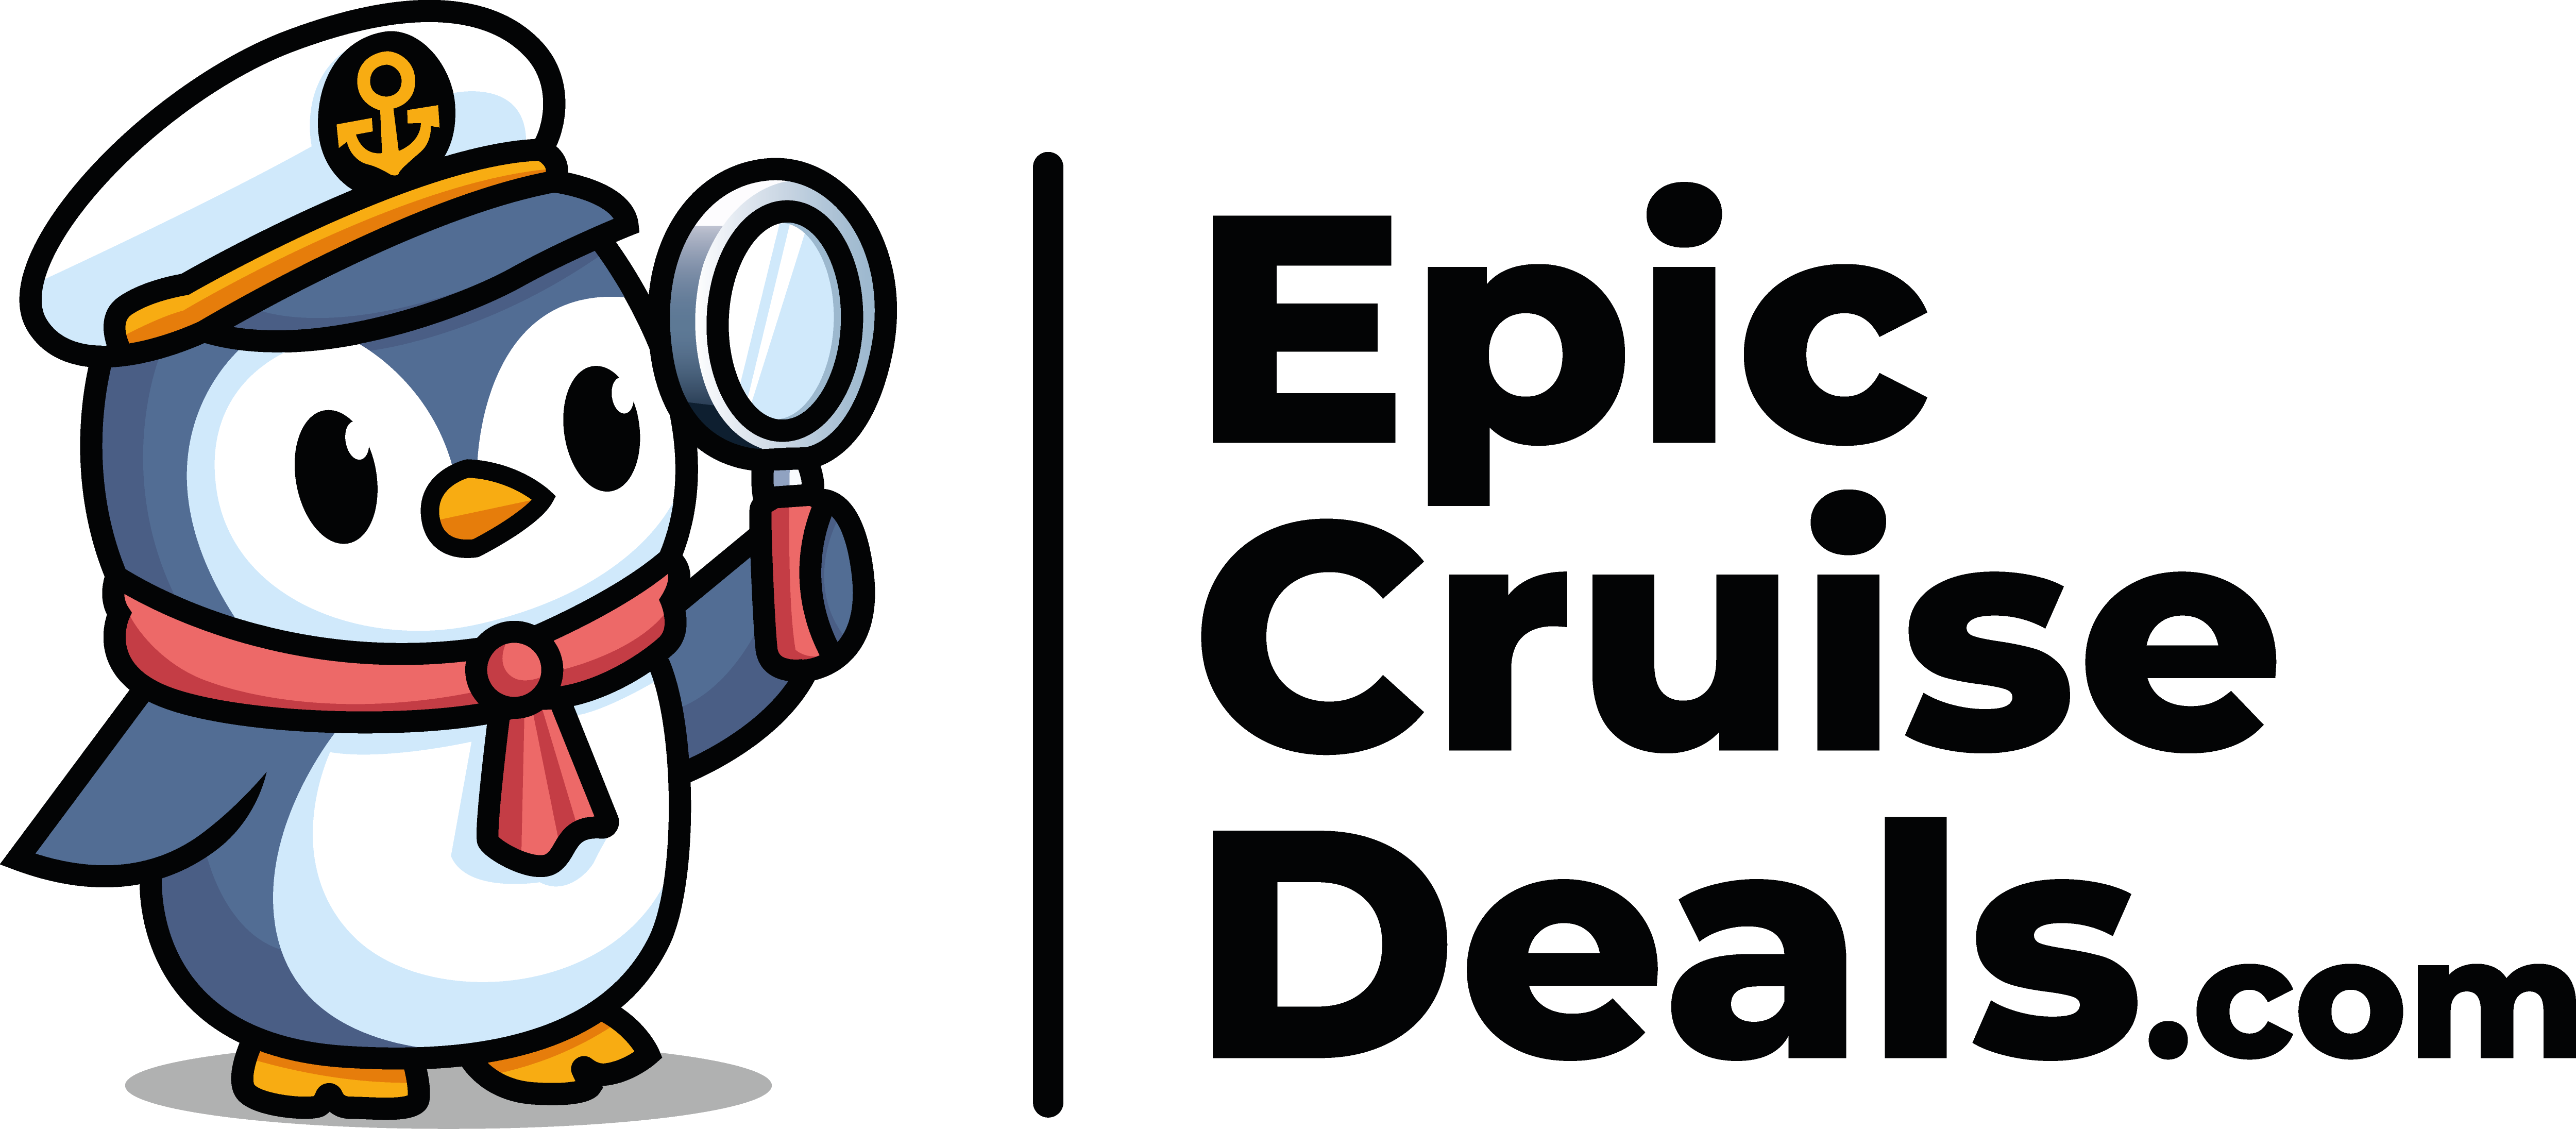 EpicCruiseDeals